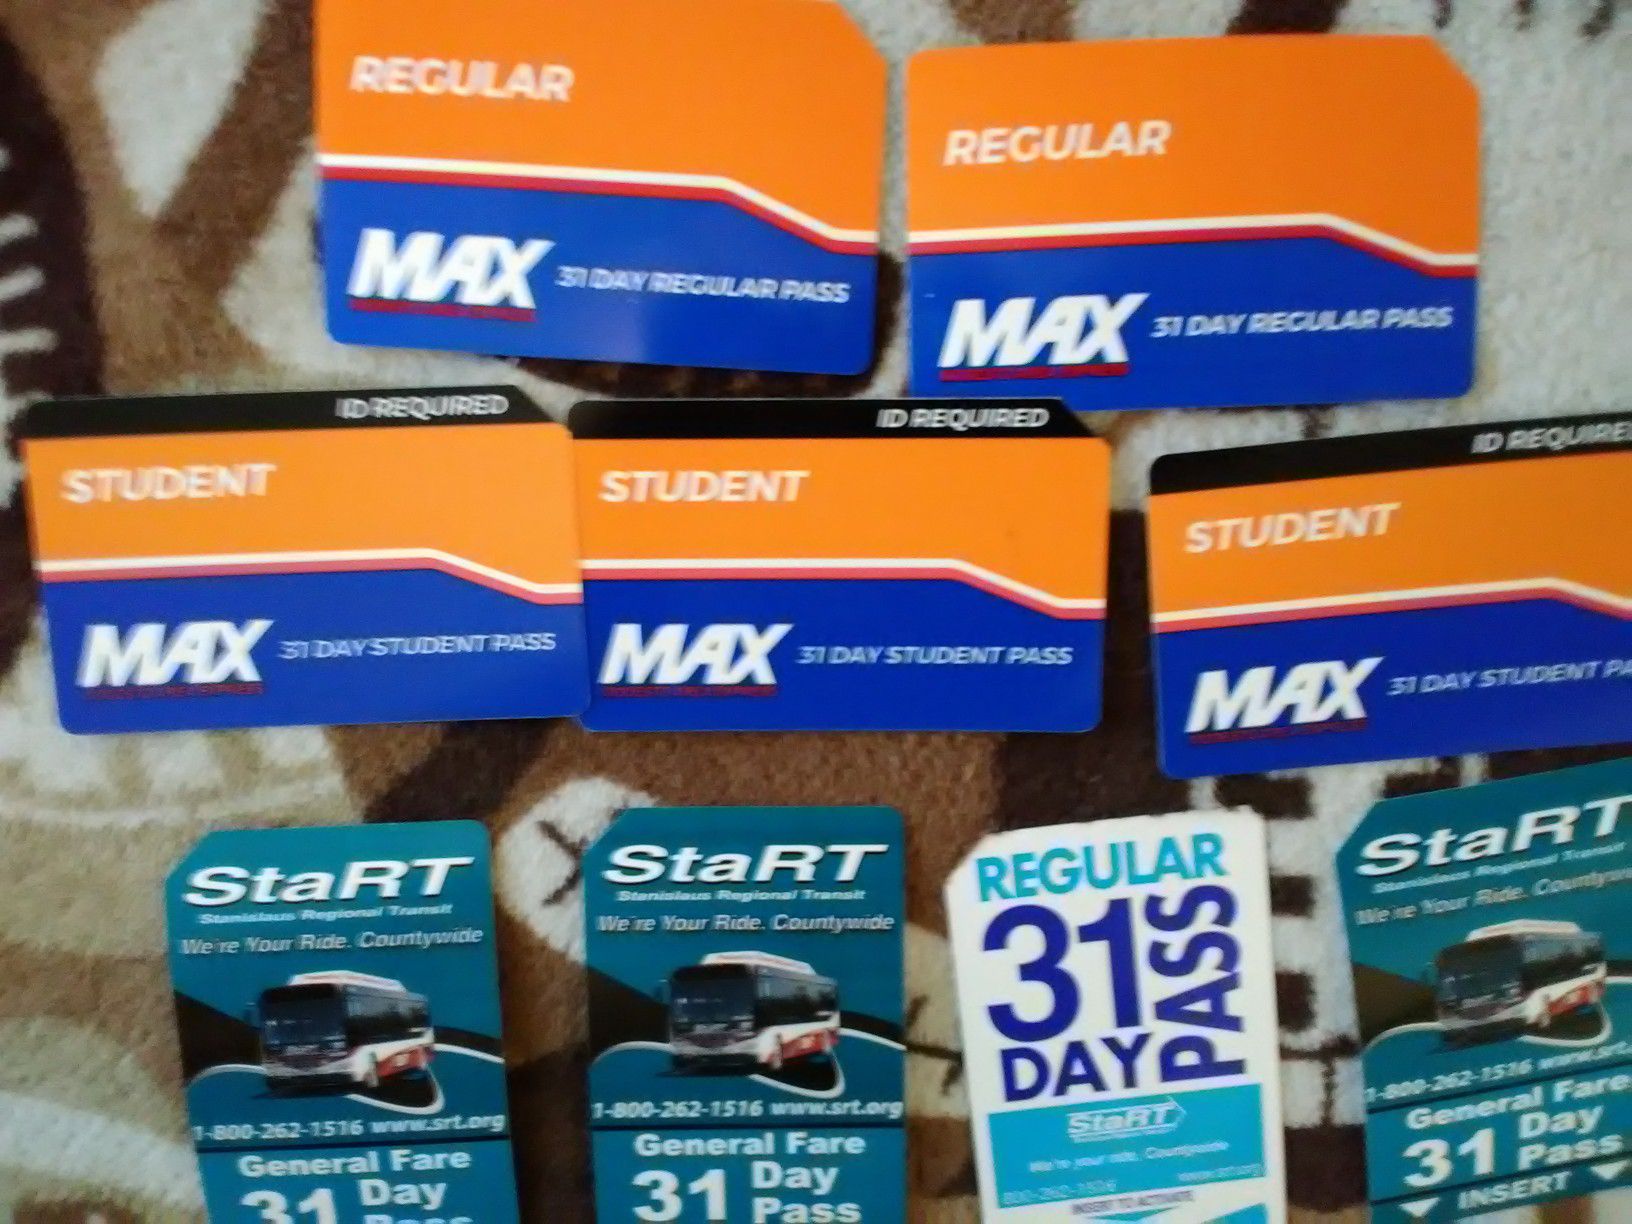 Monthly bus passes. Maxx/Start